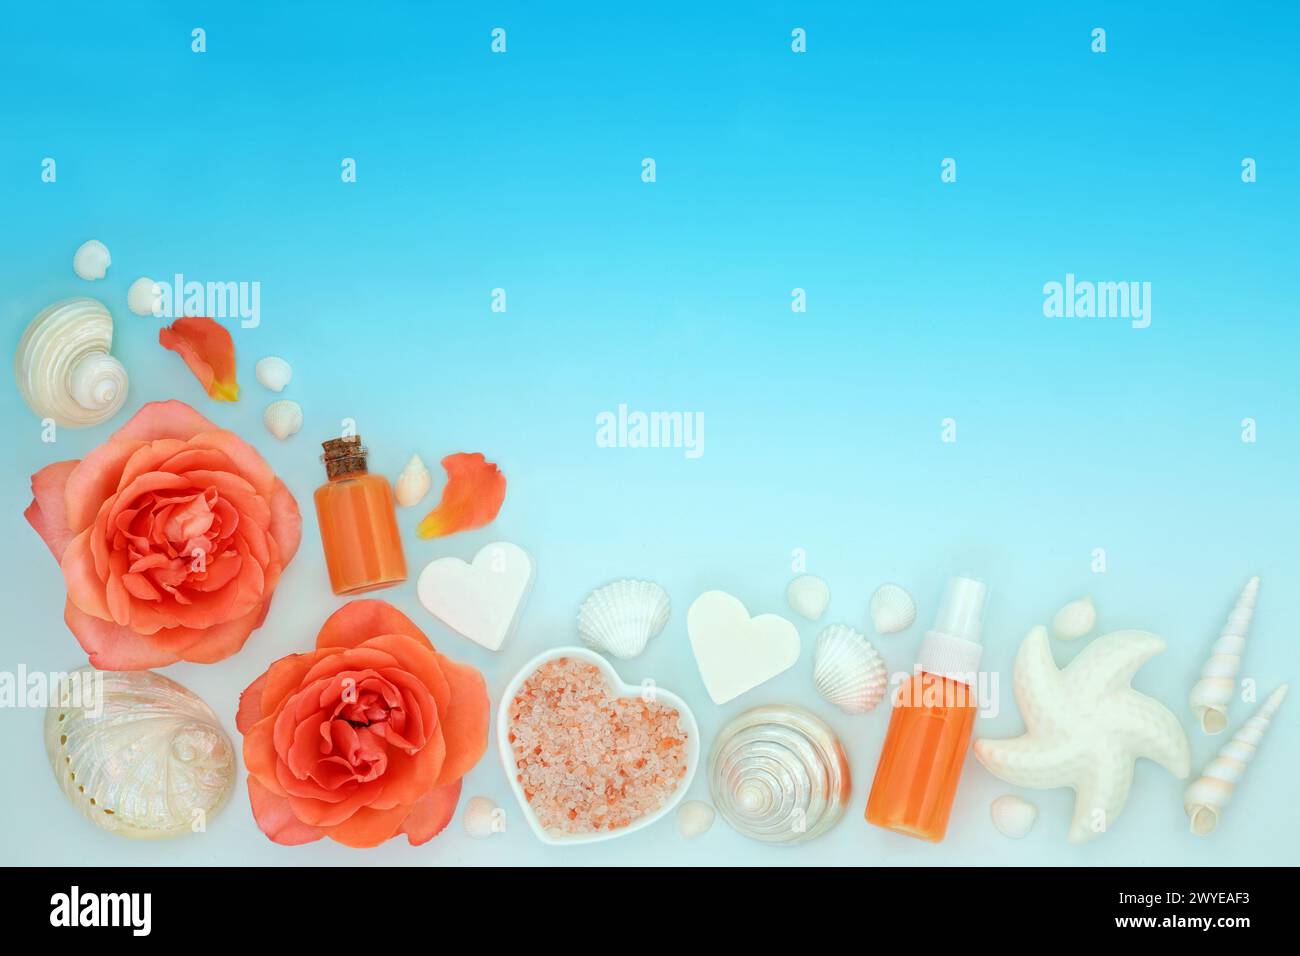 Schönheitsbehandlungen mit Rosenblüten, Orangenflora, Salzen, Duschgel, Seife und dekorativen Muscheln auf blauem Farbverlauf. Werkseitig. Stockfoto